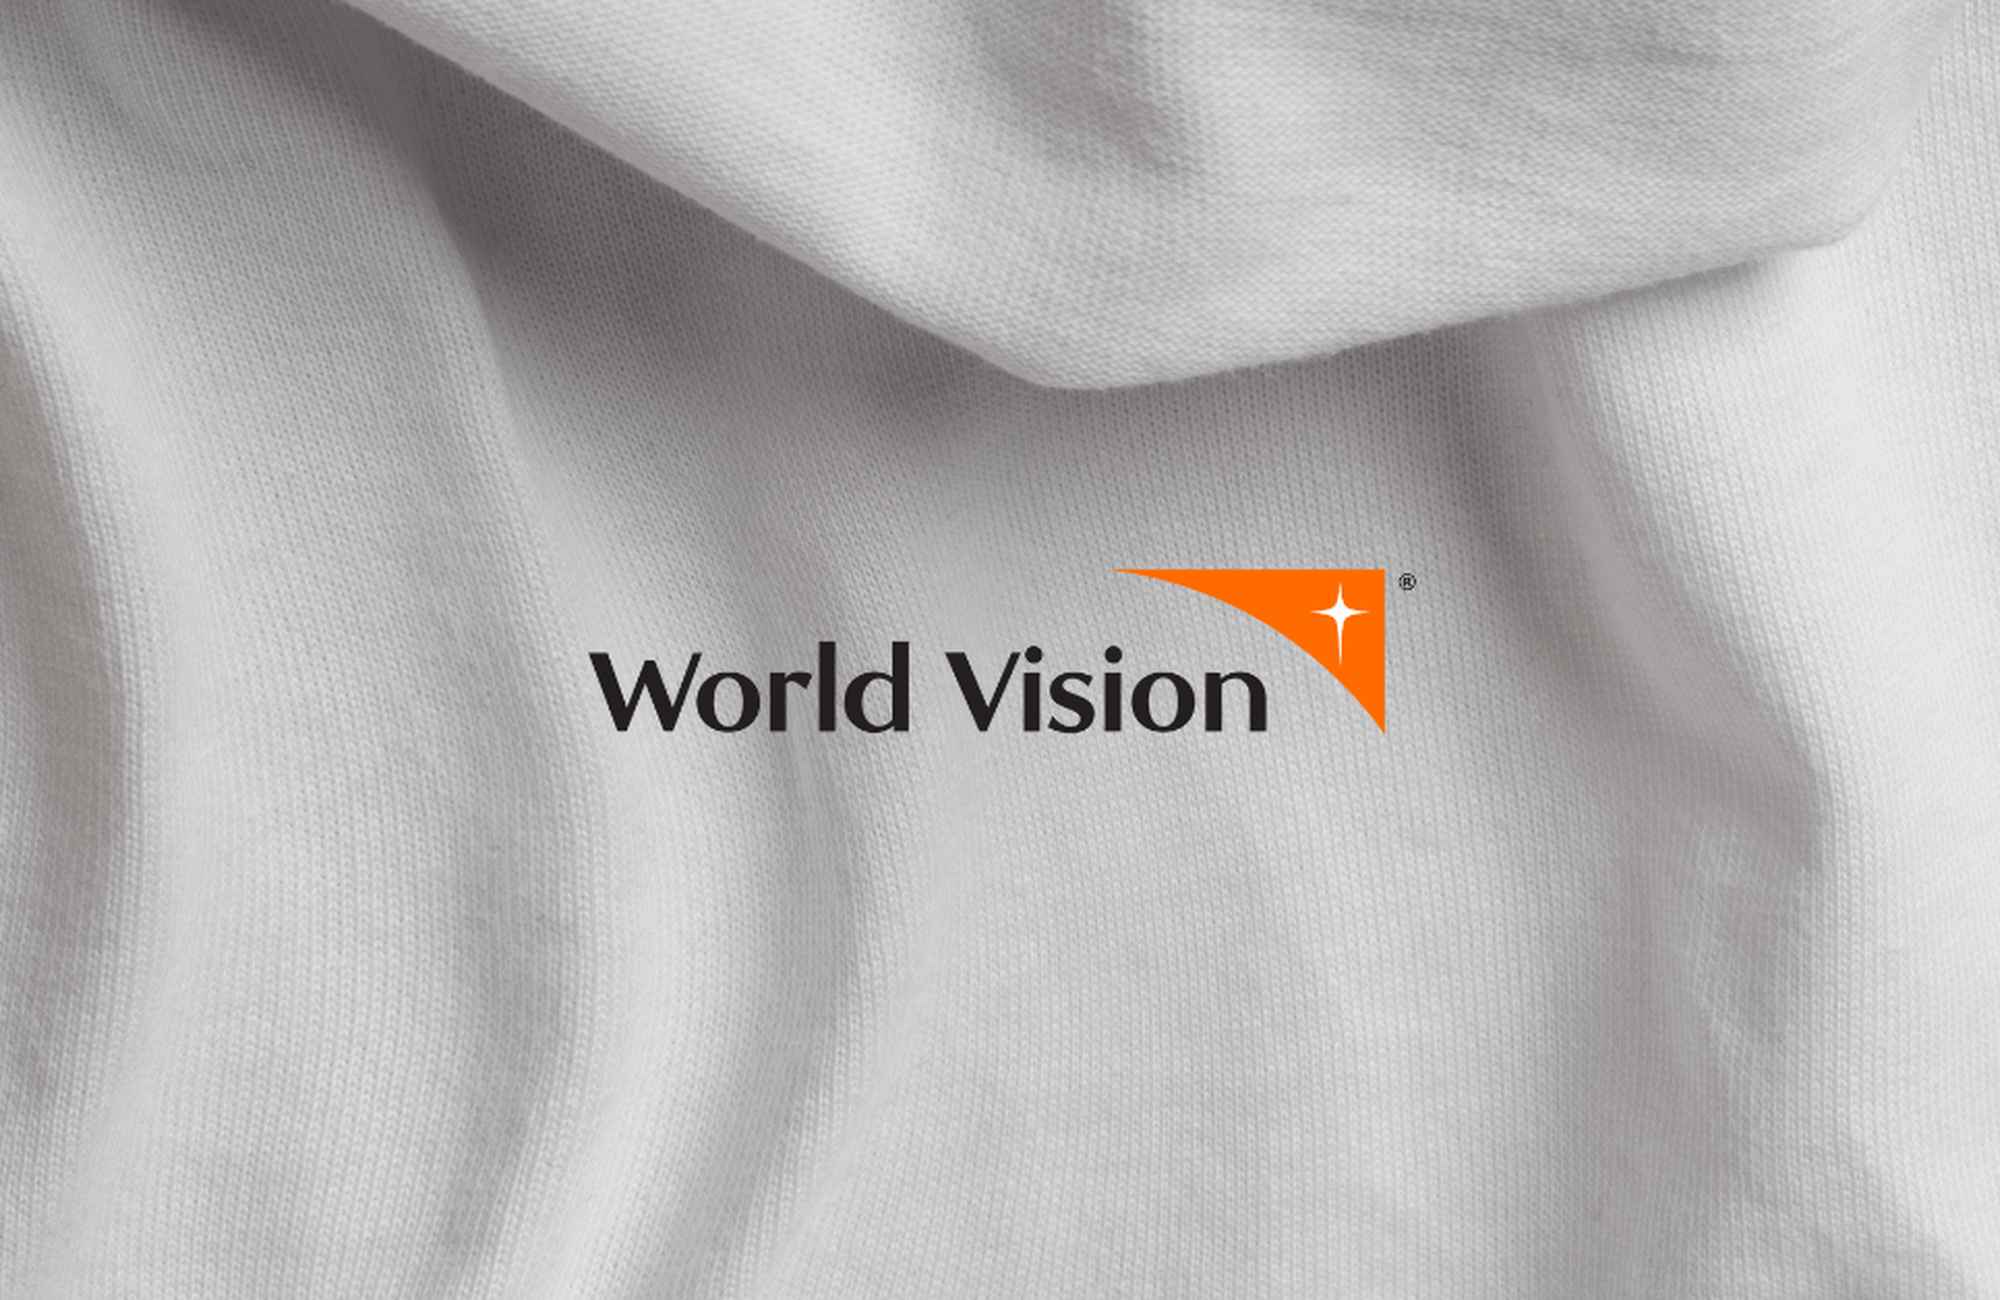 Gildan amplía su alianza con World Vision con donativo de $ 460,000 en apoyo empoderamiento mujeres